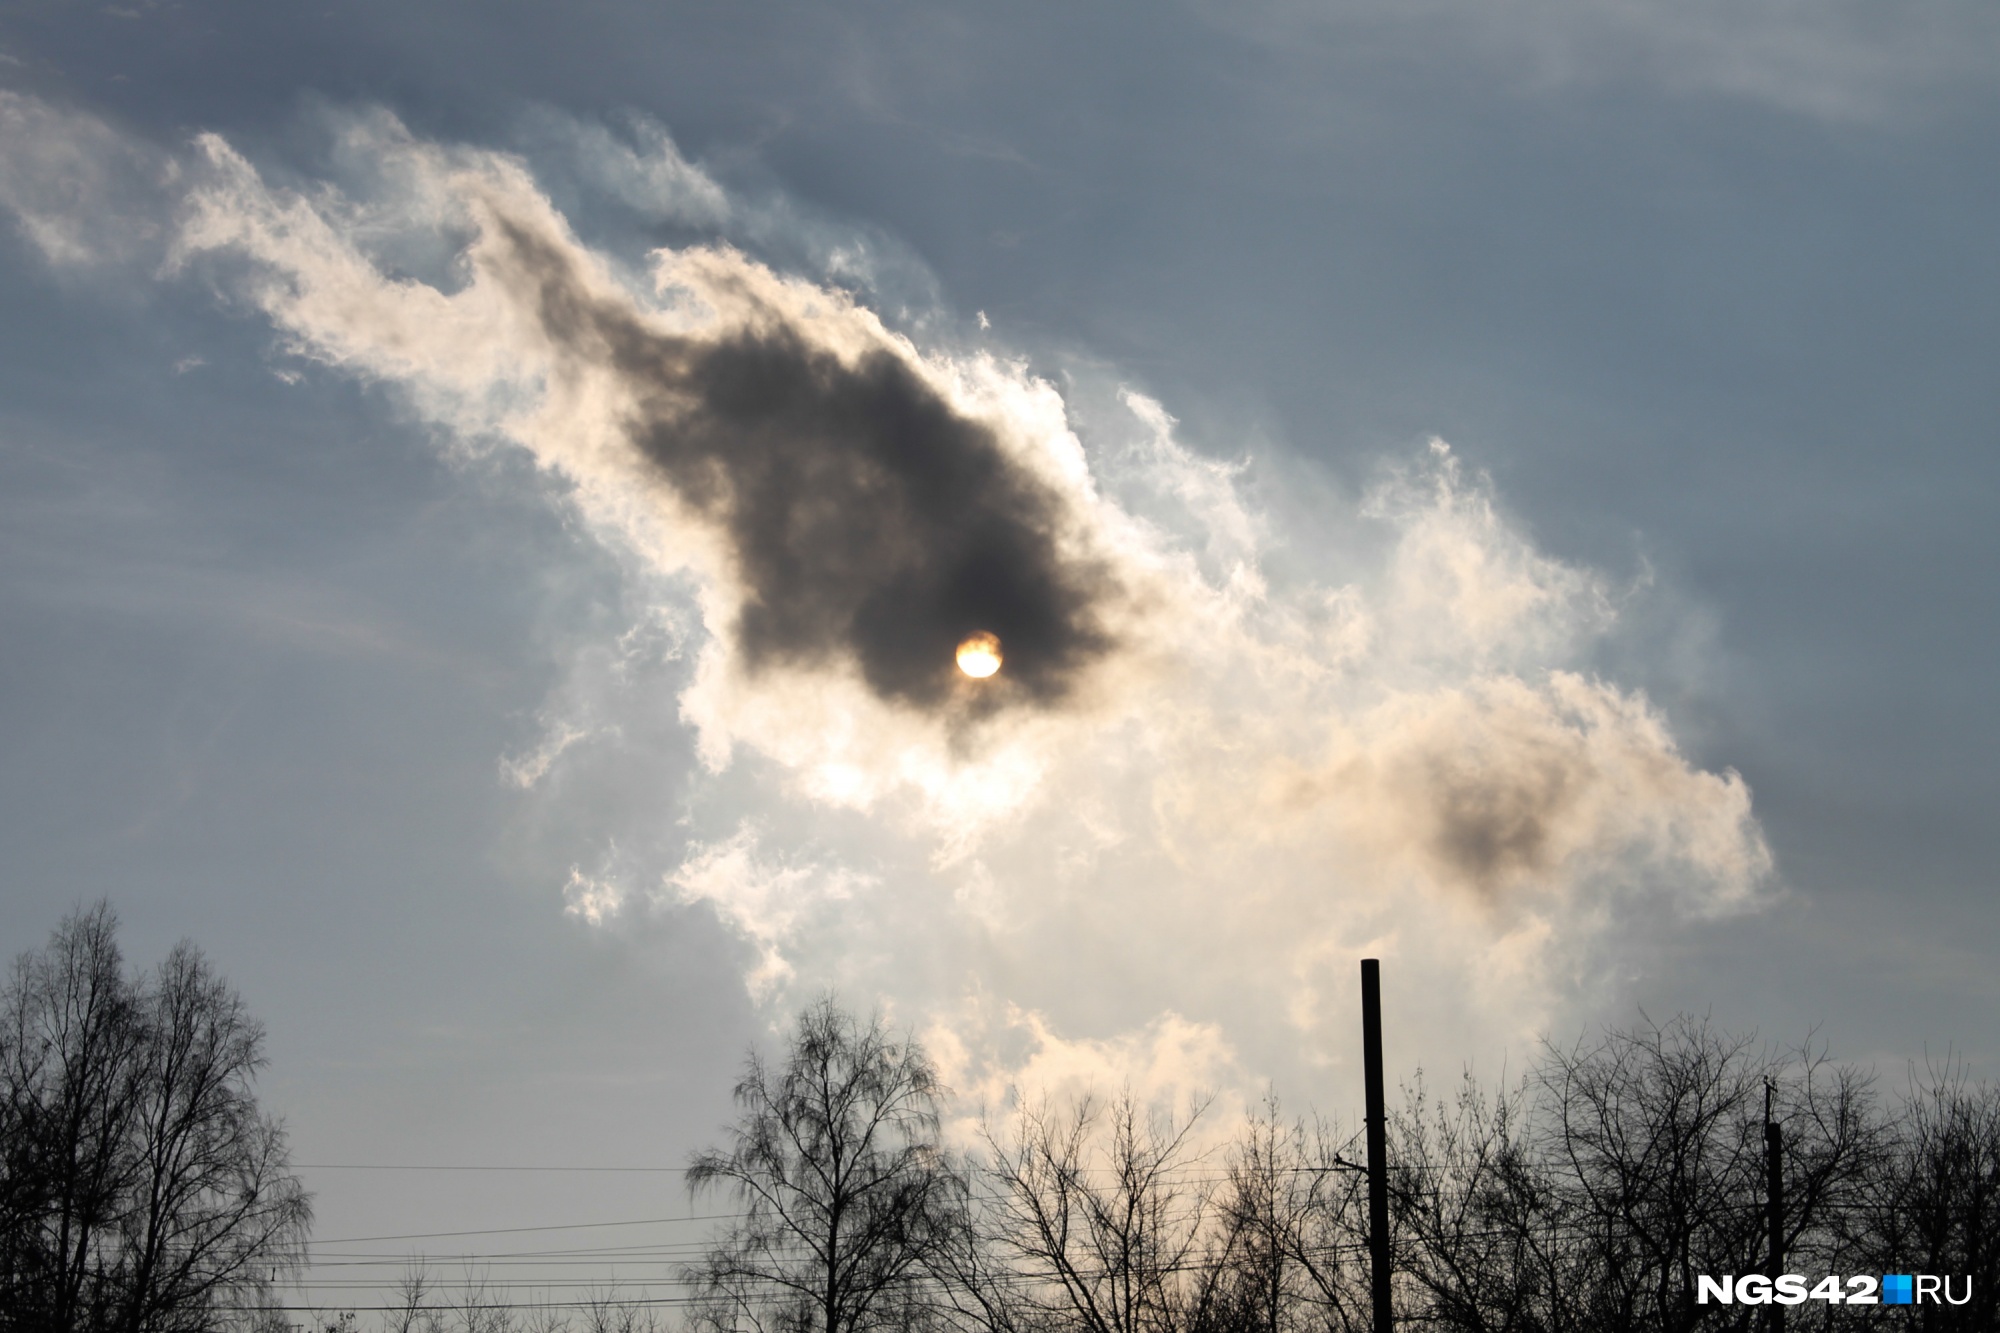 Дойдет ли дым от лесных пожаров до Кузбасса? Узнали у синоптиков